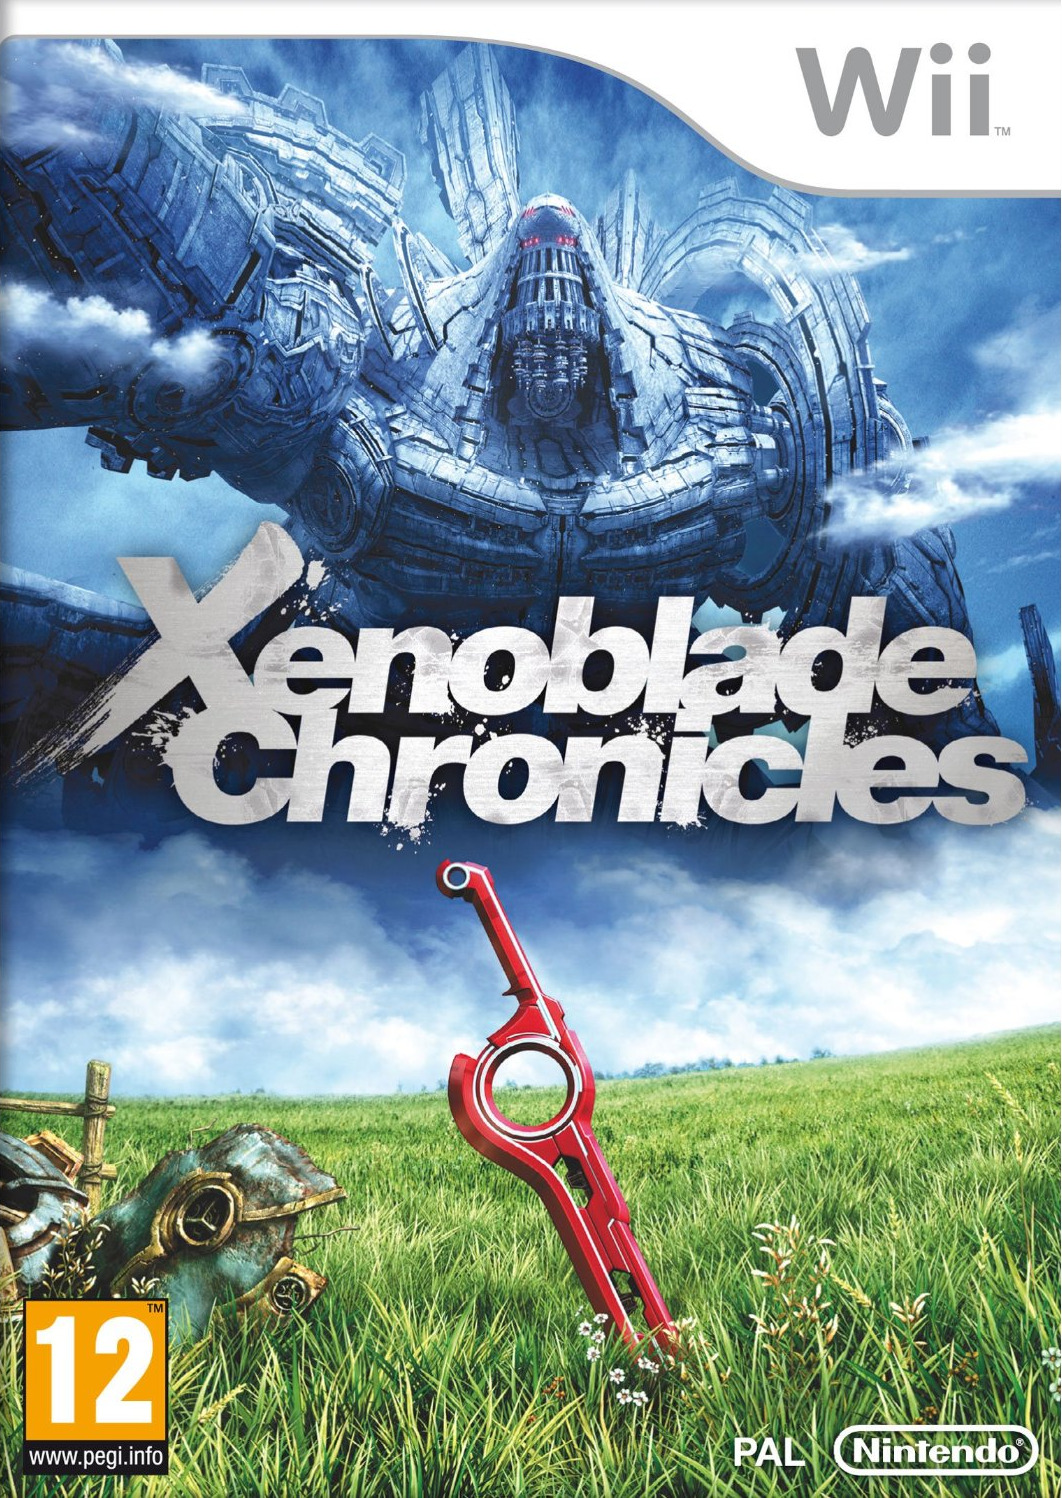 jaquette du jeu vidéo Xenoblade Chronicles